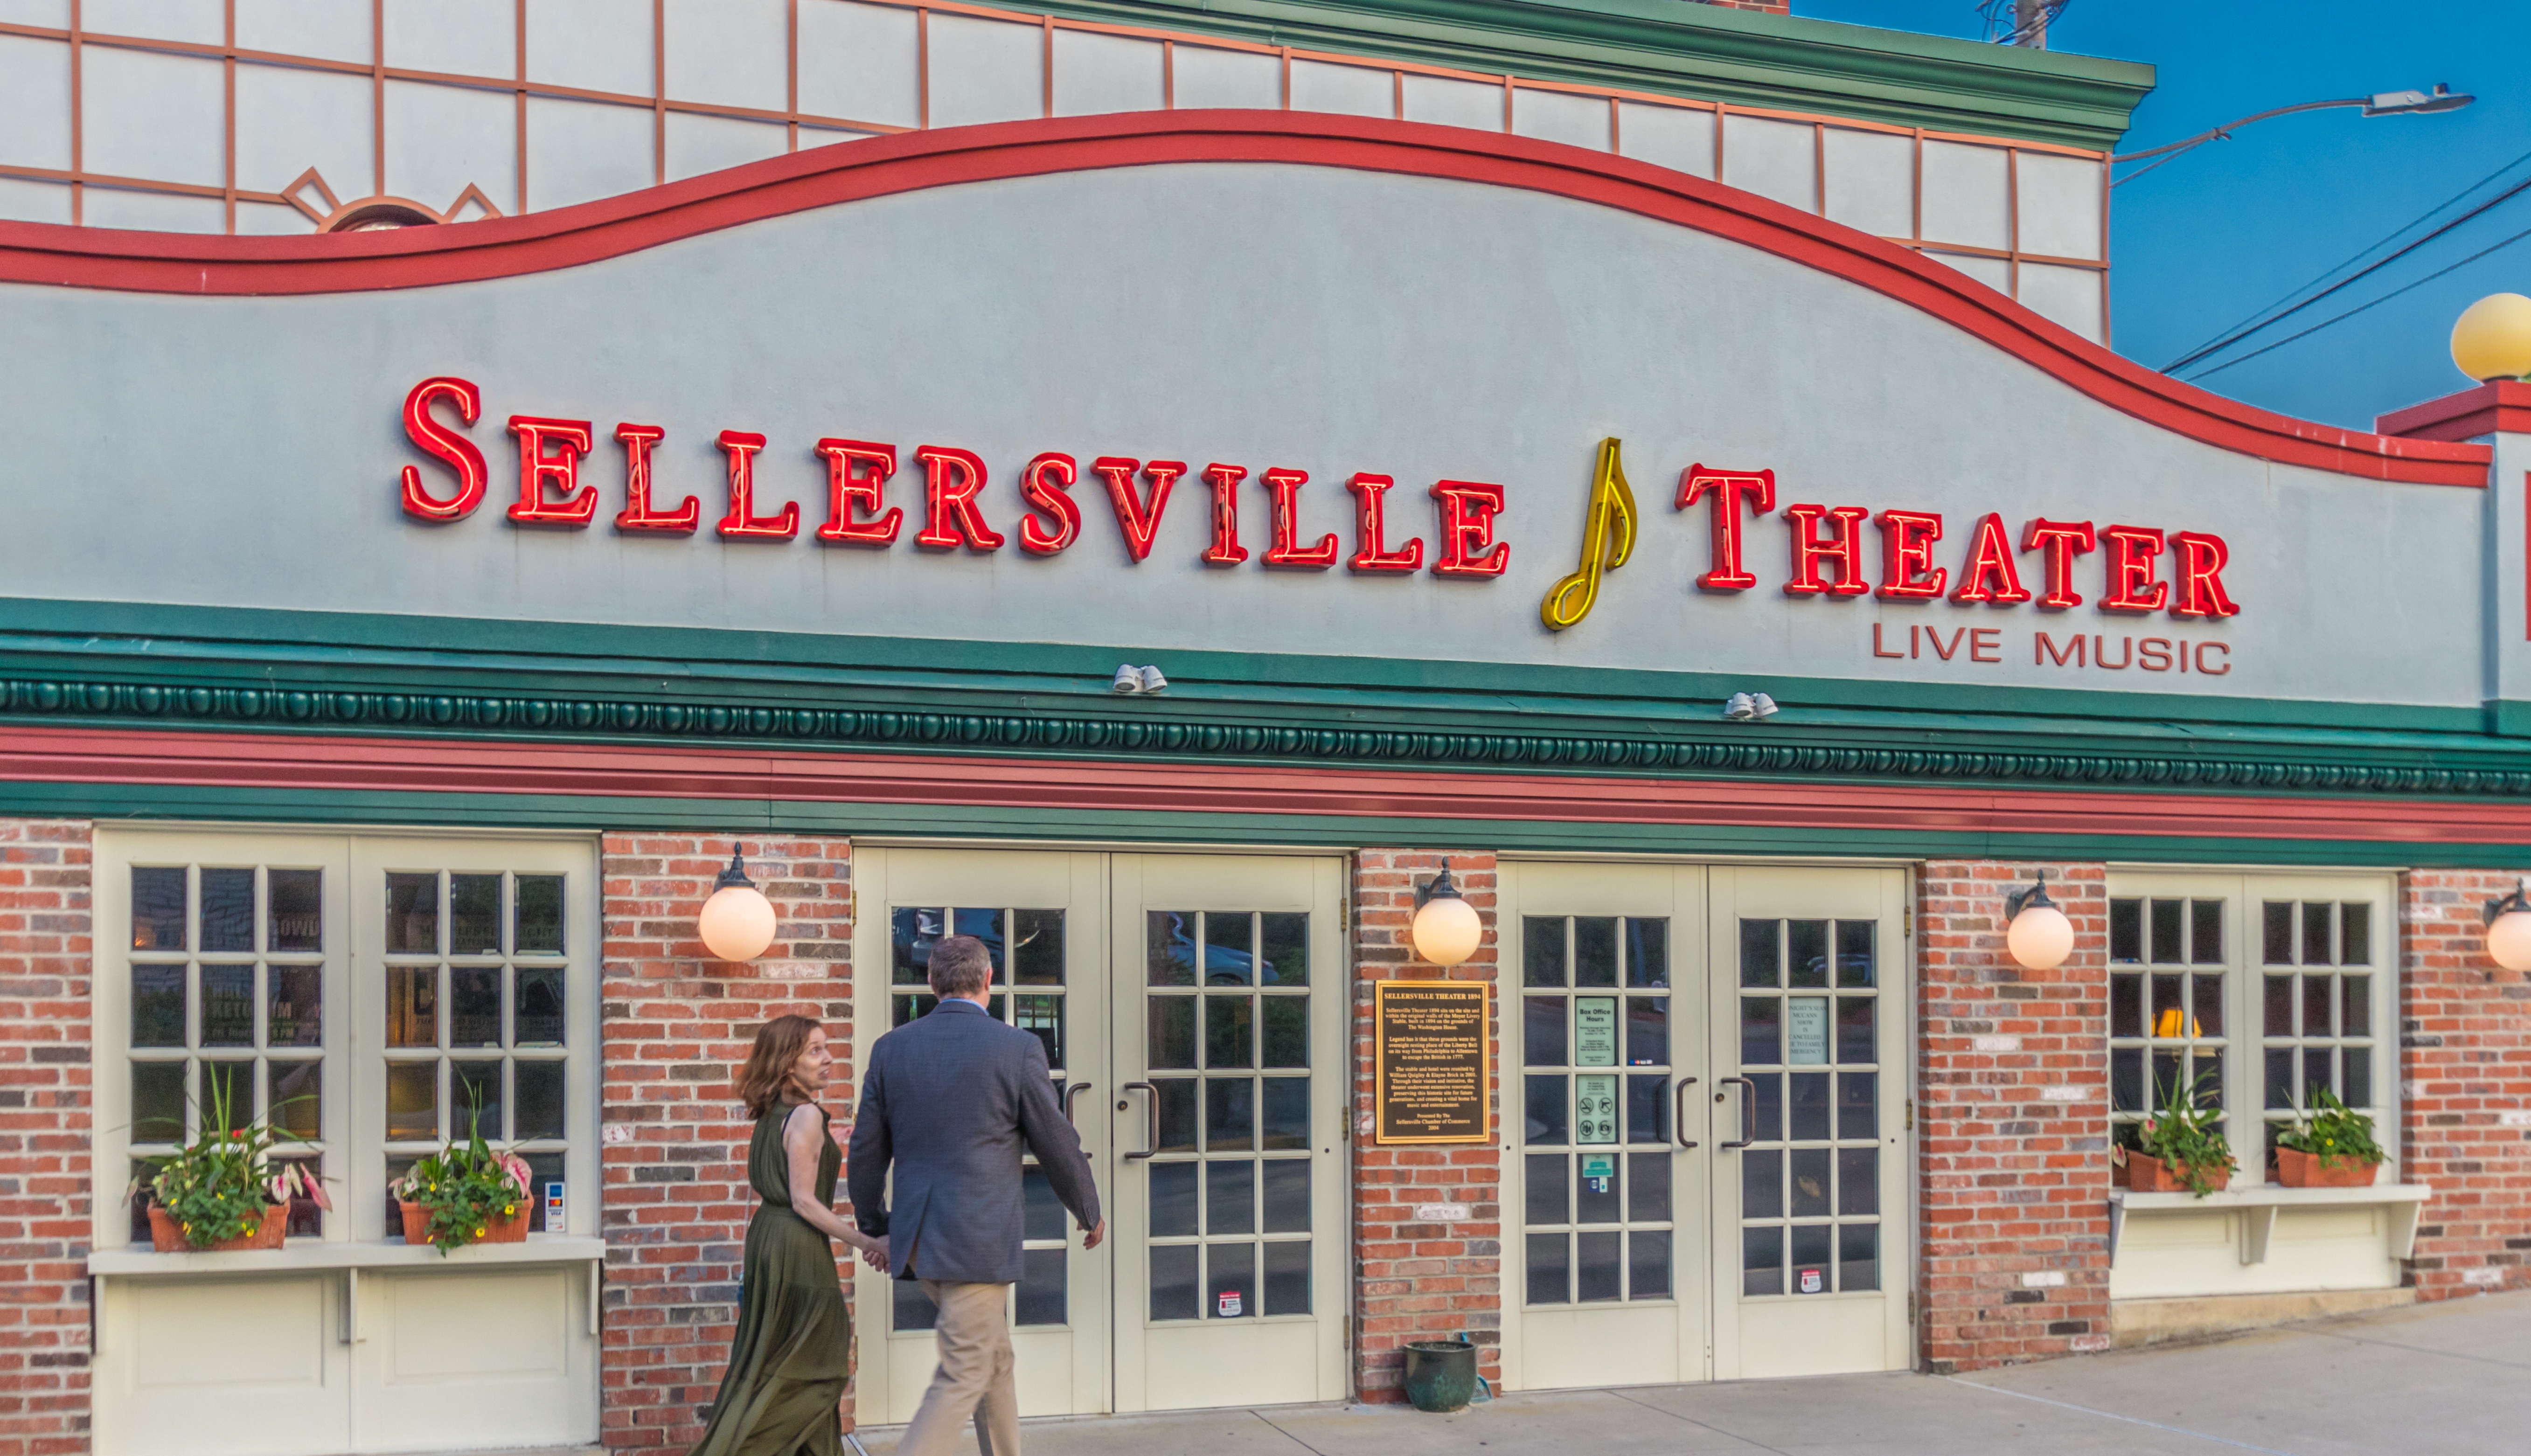 Sellersville Theater